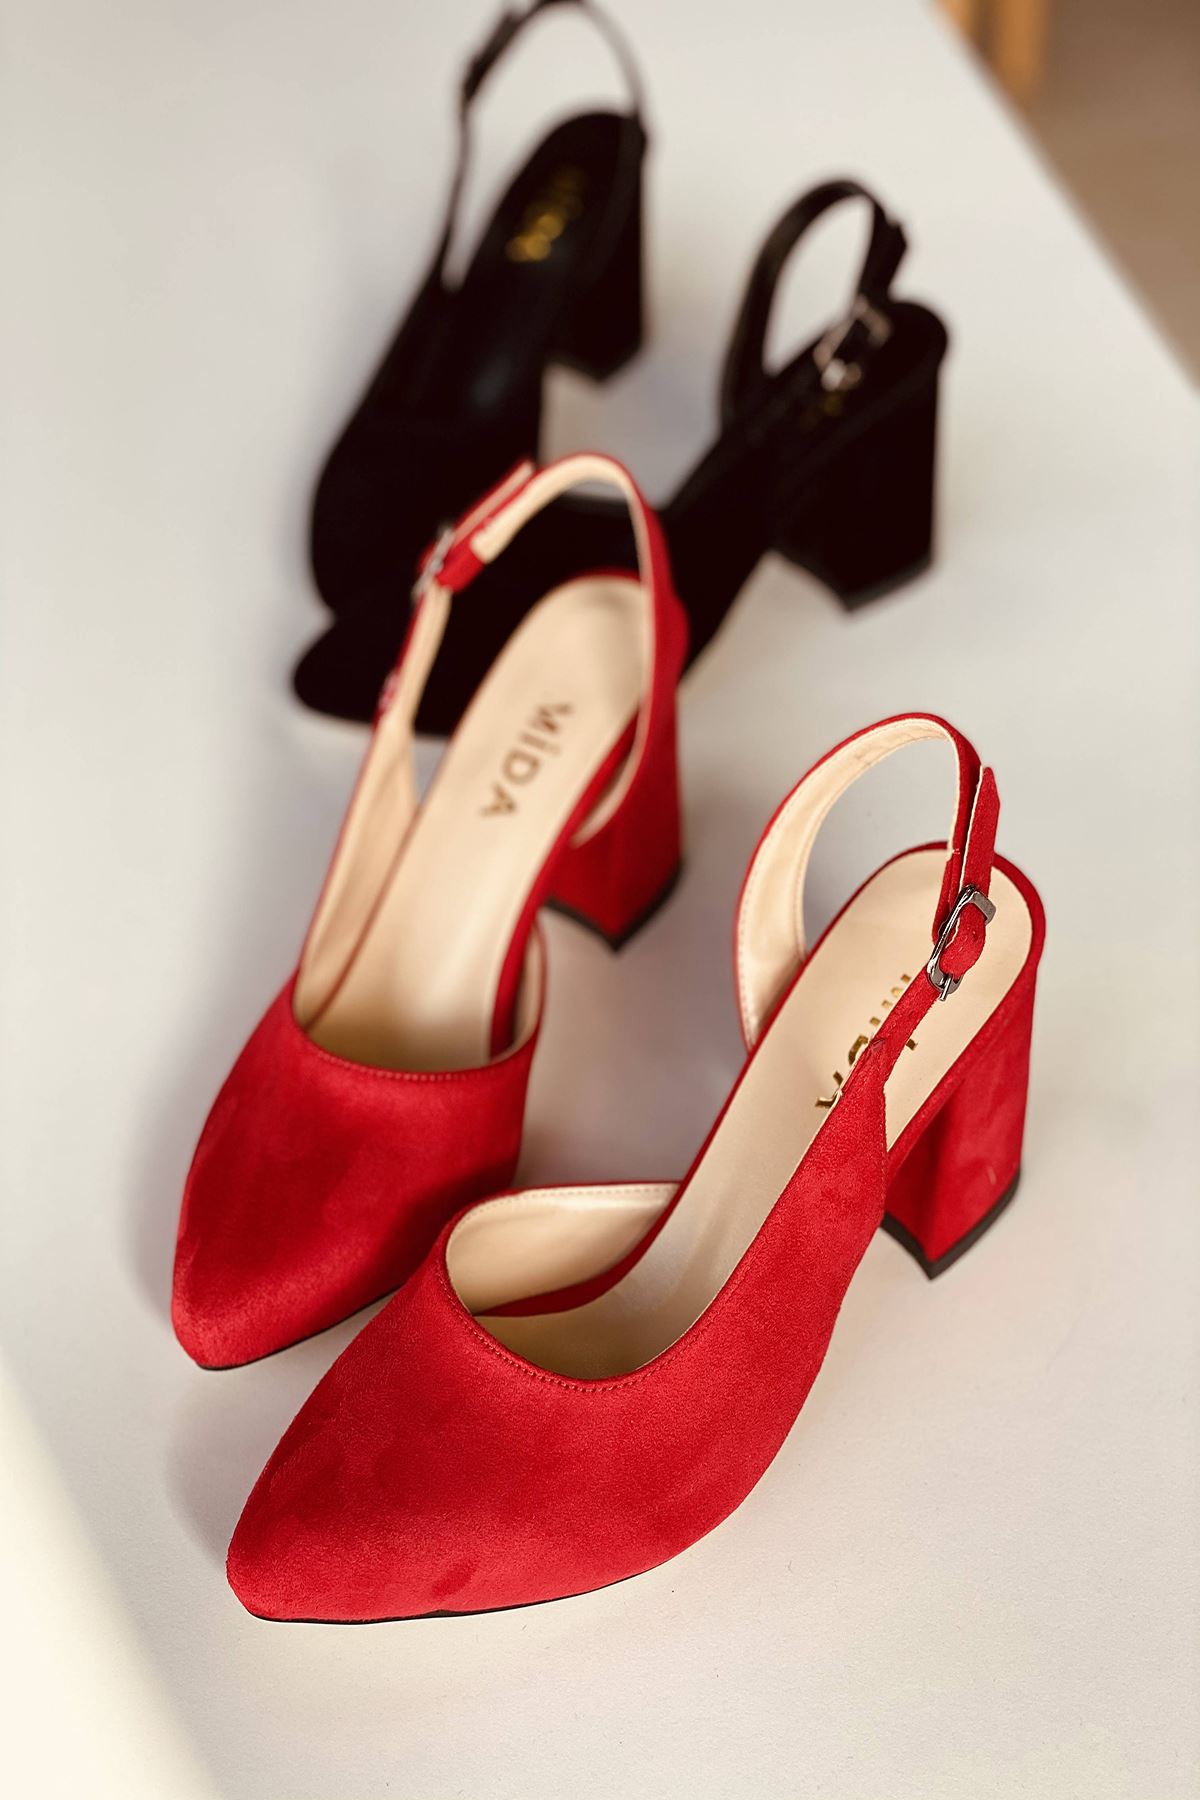 Mida Shoes Y127 Kırmızı Süet Topuklu Ayakkabı